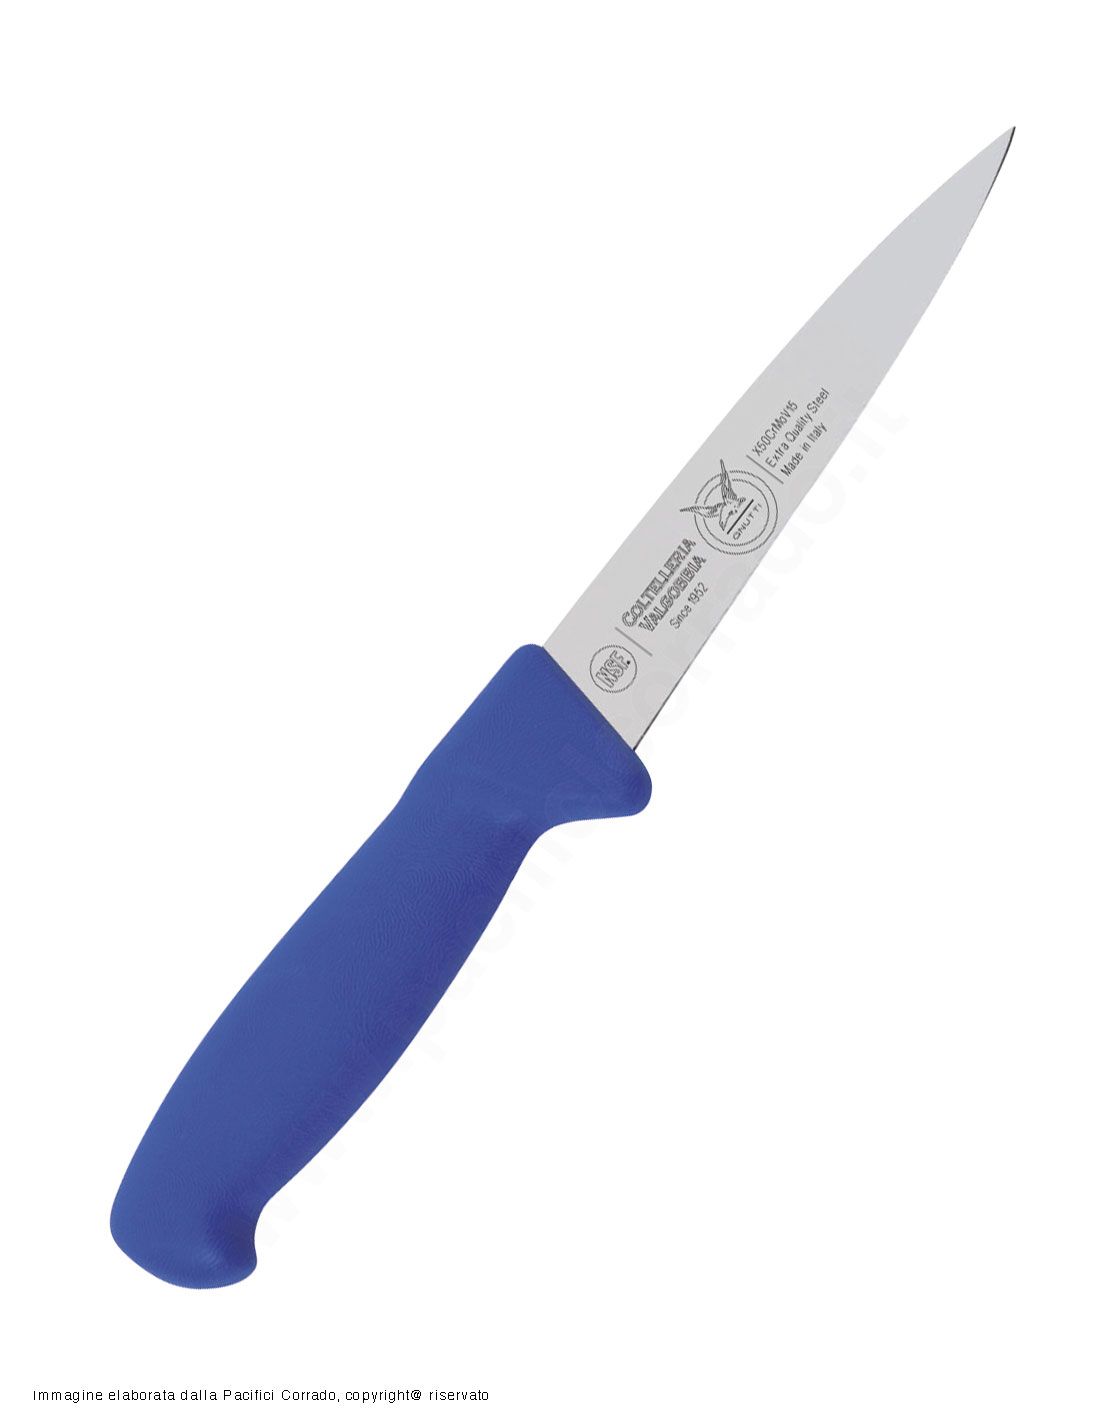 Valgobbia - coltello da disosso scanno largo lama da 13, 16 cm